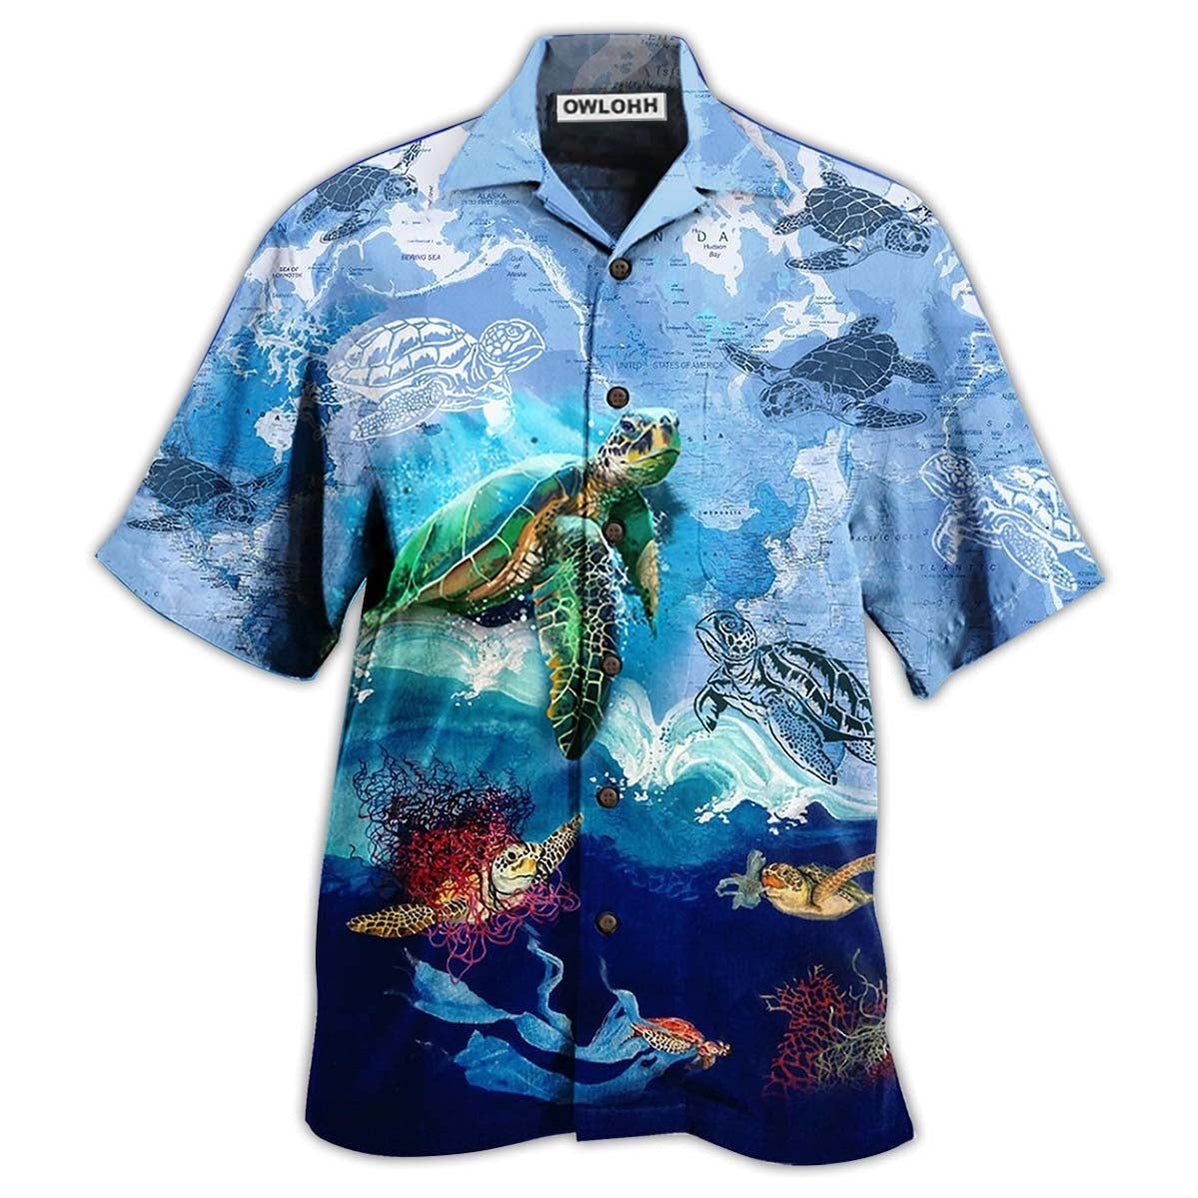 Hawaiian Shirt / Adults / S Turtle Go With The Flow - Hawaiian Shirt - Owls Matrix LTD